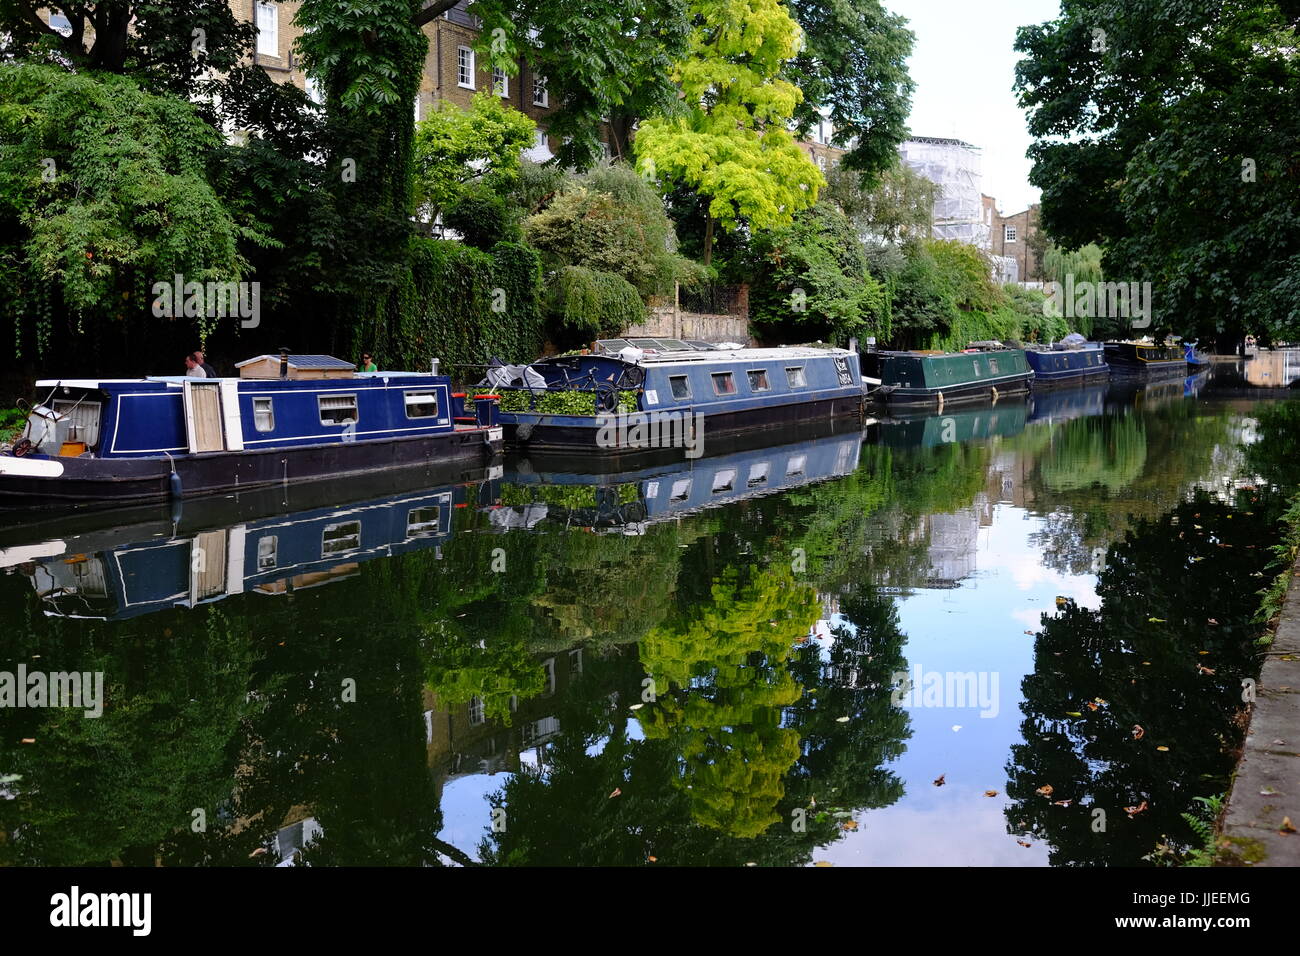 Los cambios en el estilo de vida hecha por vivir en casa botes en el Regents Canal cerca del Túnel de Islington, un oculto y muy tranquila de Londres. Foto de stock